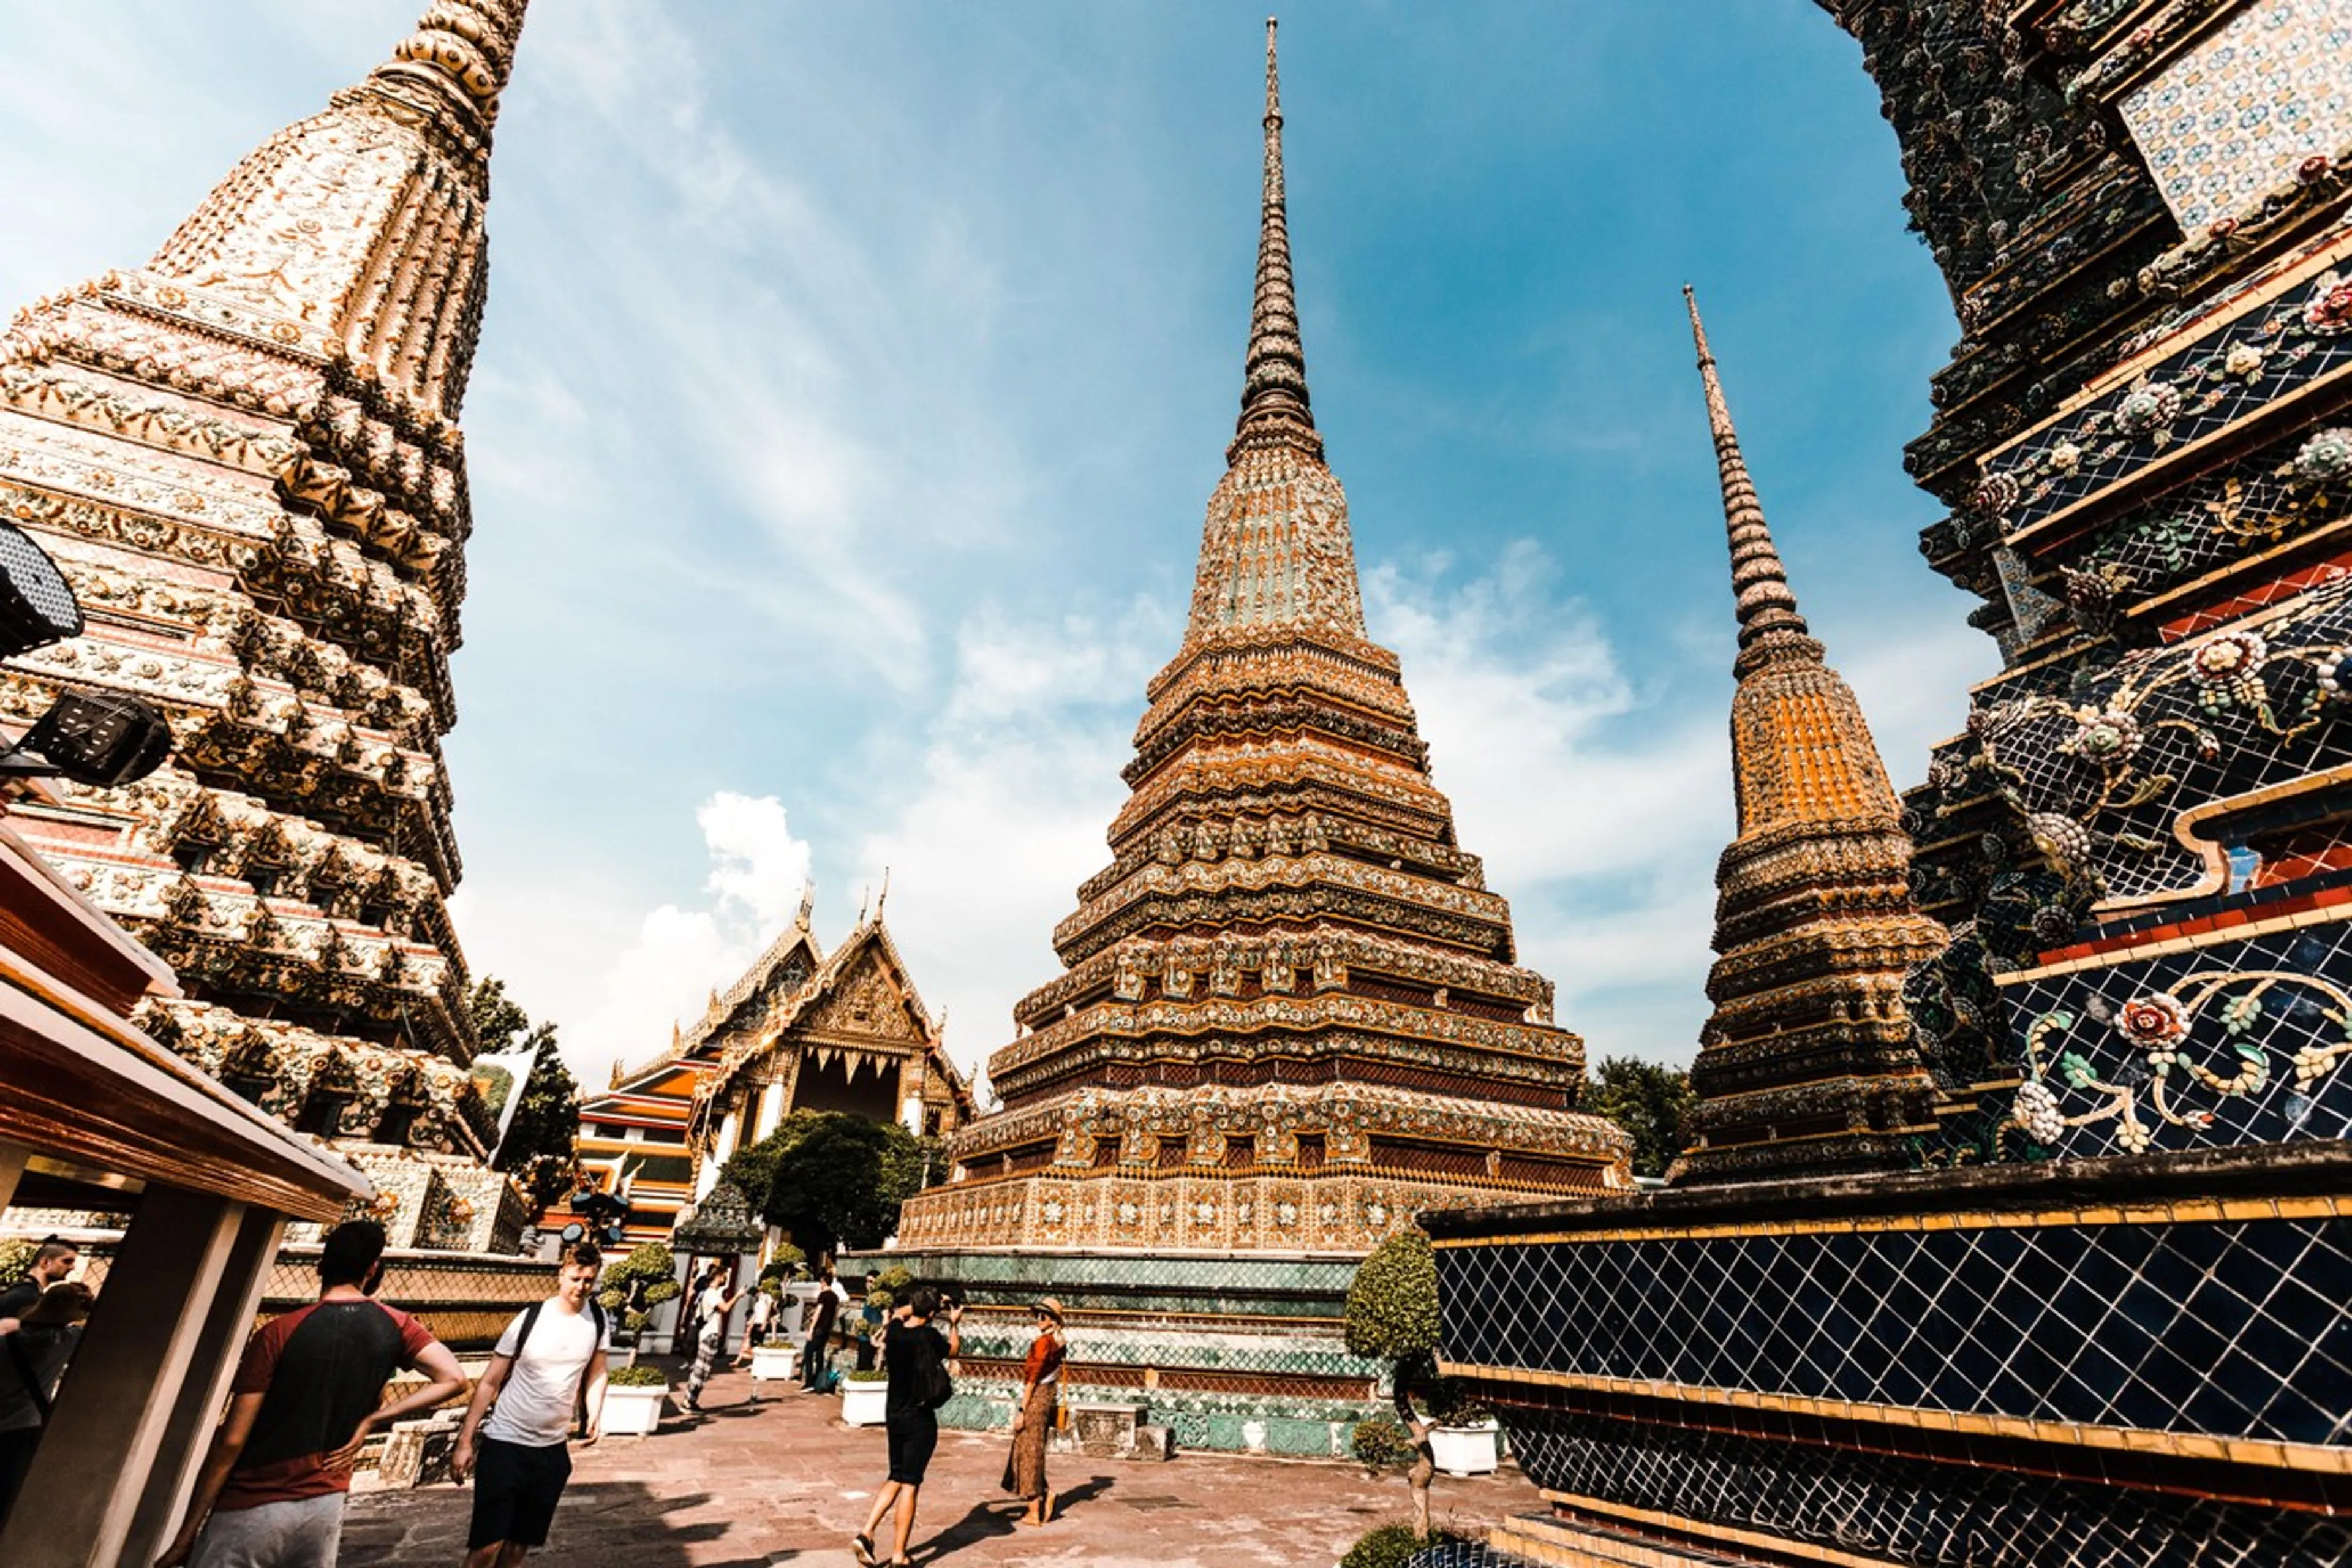 Bangkok City Pillar Shrine là một địa điểm tâm linh và văn hóa quan trọng ở trung tâm thành phố Bangkok, Thái Lan